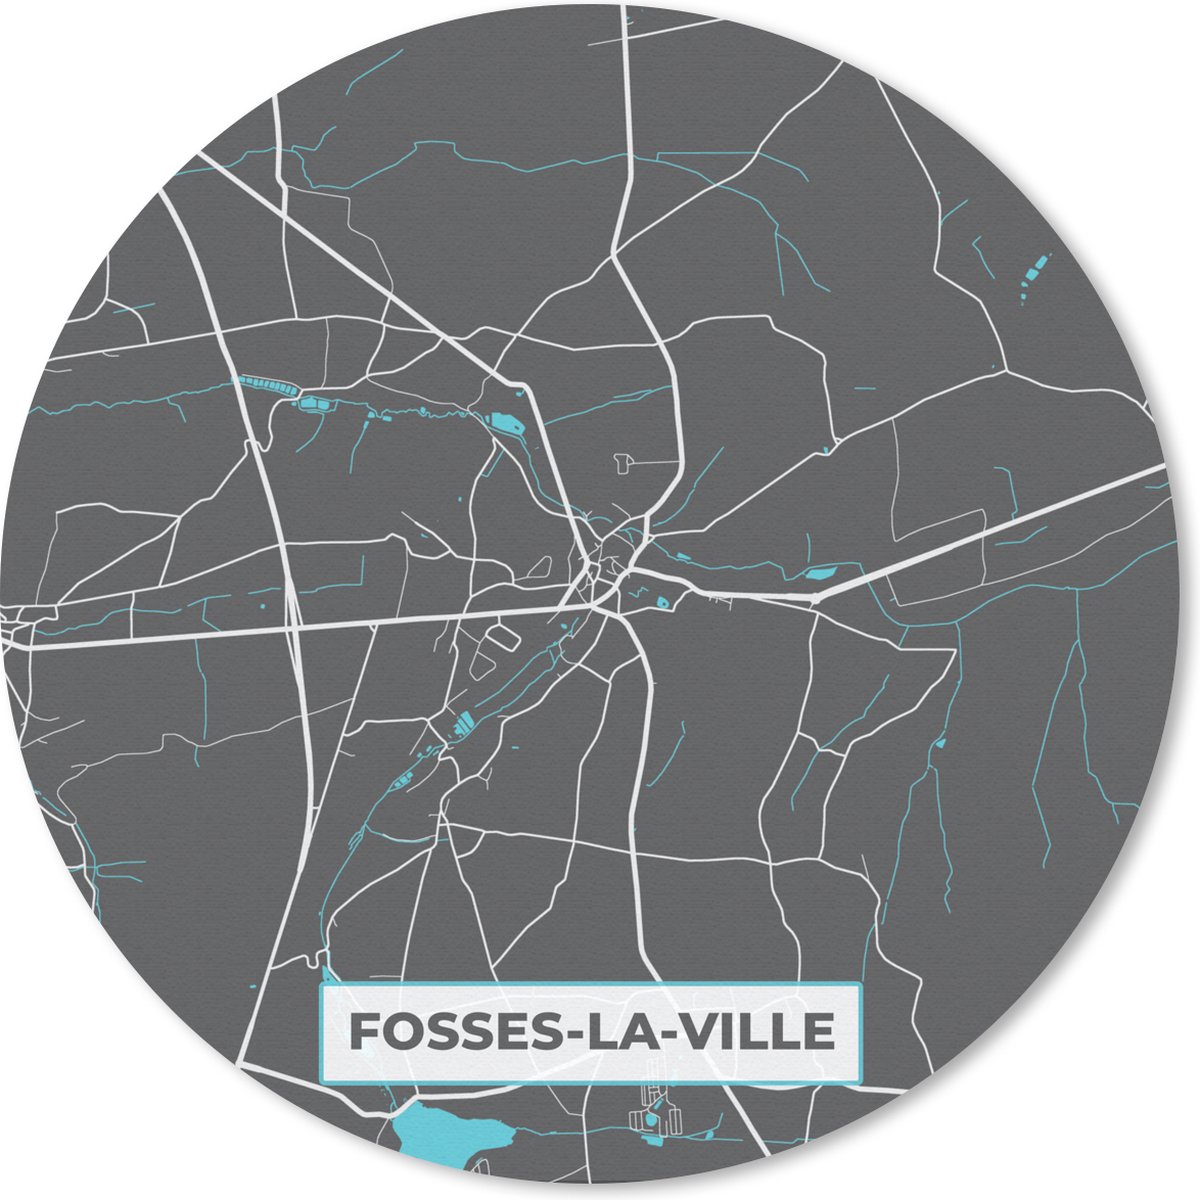 Muismat - Mousepad - Rond - Plattegrond – Fosses la Ville – Blauw – Stadskaart - Kaart - 20x20 cm - Ronde muismat